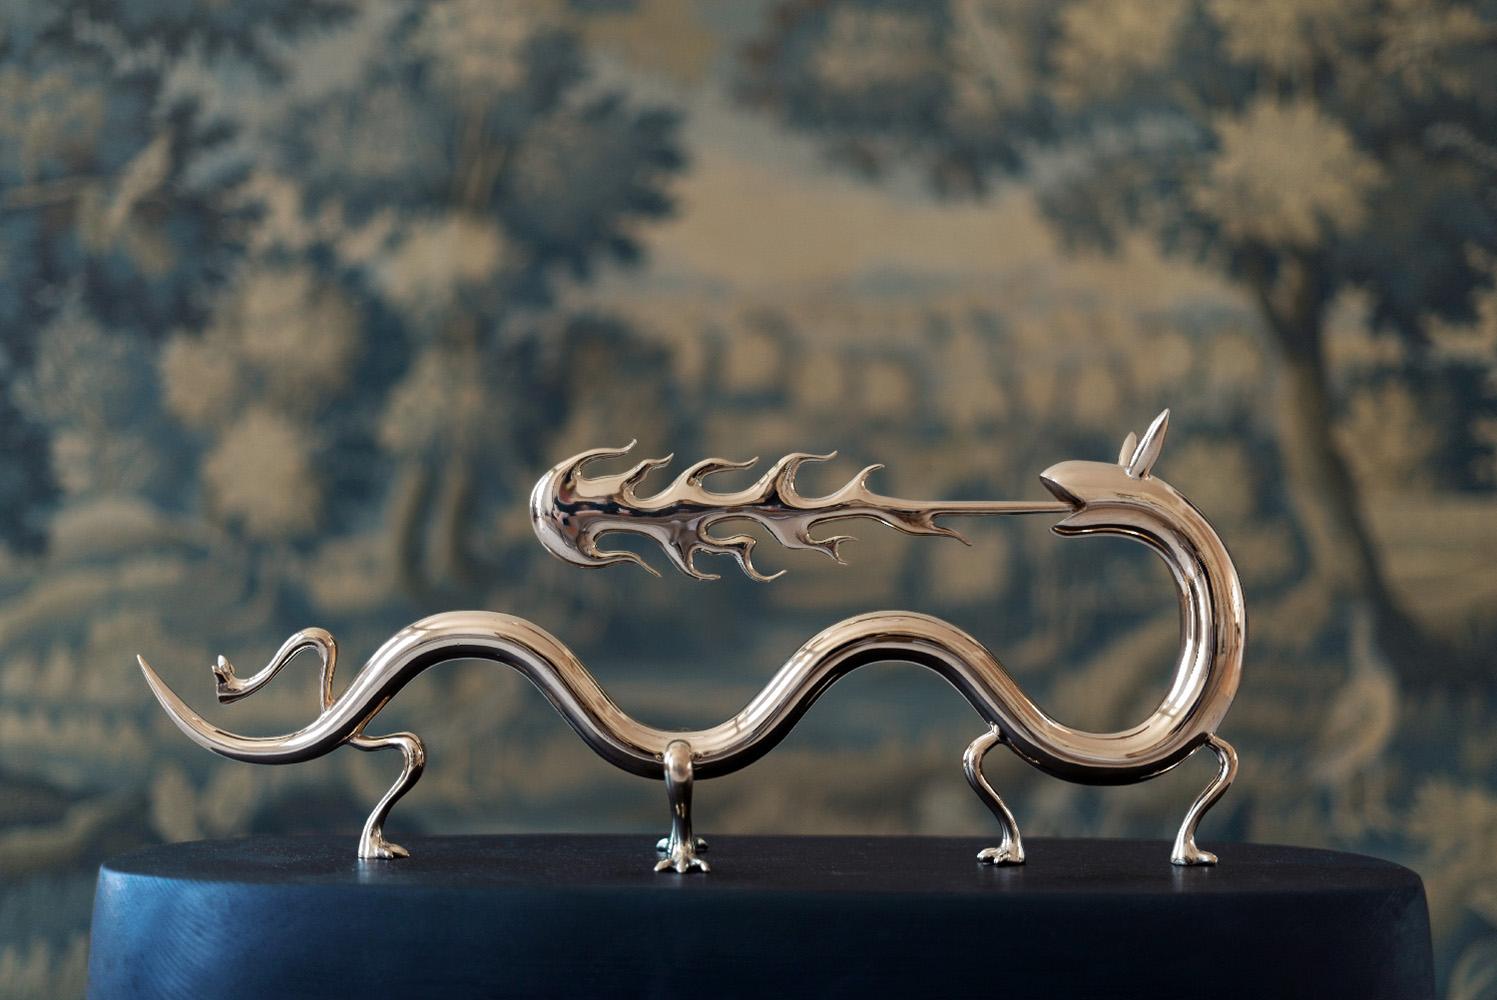 Dragona (Dragonne), sculpture en bronze de Marcelo Martin Burgos, 13 cm × 47 cm × 4 cm. Édition limitée à 8 + 4 épreuves d'artiste, chaque sculpture est vendue avec un certificat d'authenticité signé par l'artiste.
L'univers artistique de l'artiste